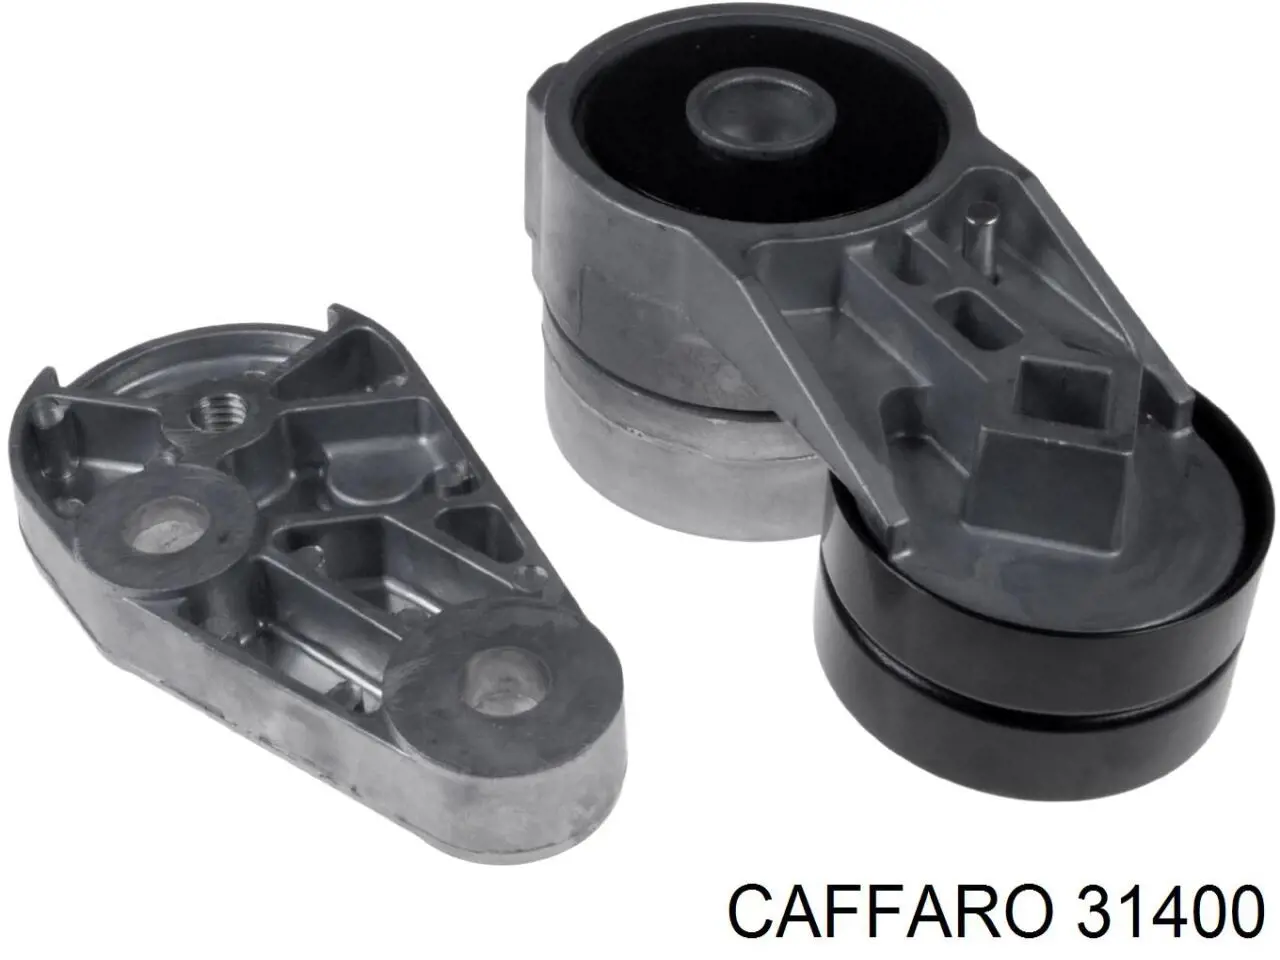 CFR 314-00 Caffaro polea tensora correa poli v